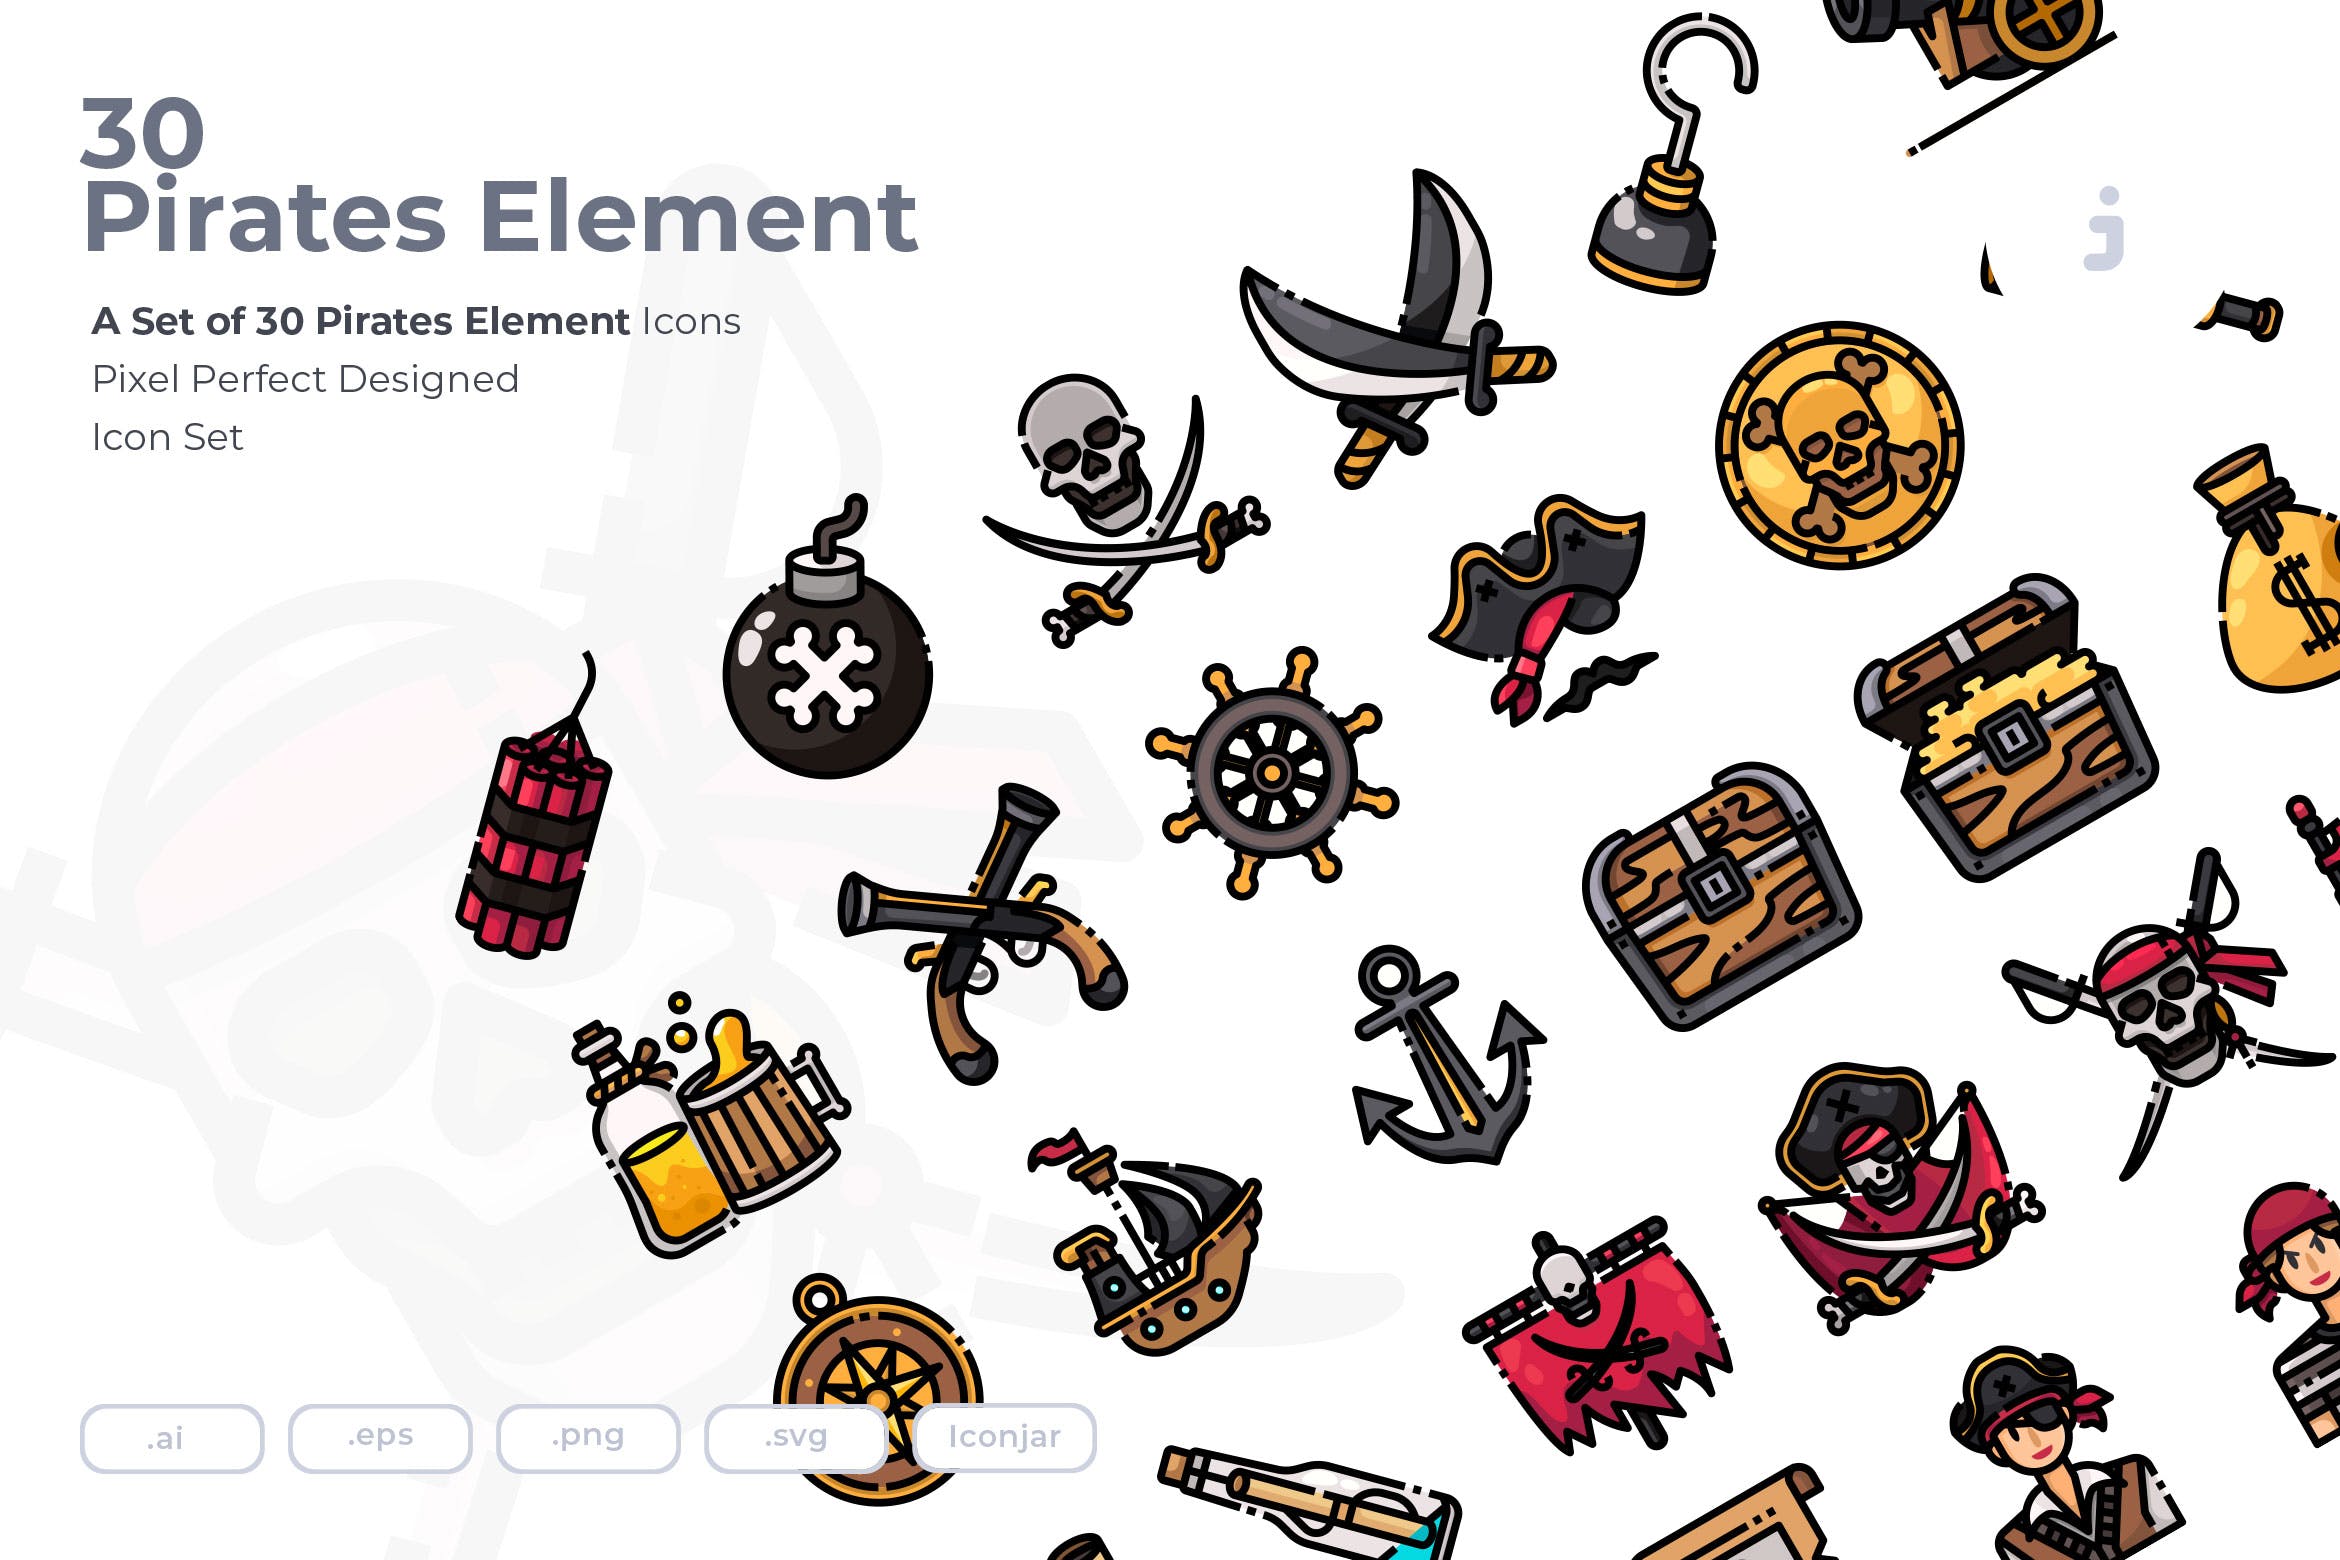 30海盗元素系列图标源文件下载30 Pirates Element Icons插图